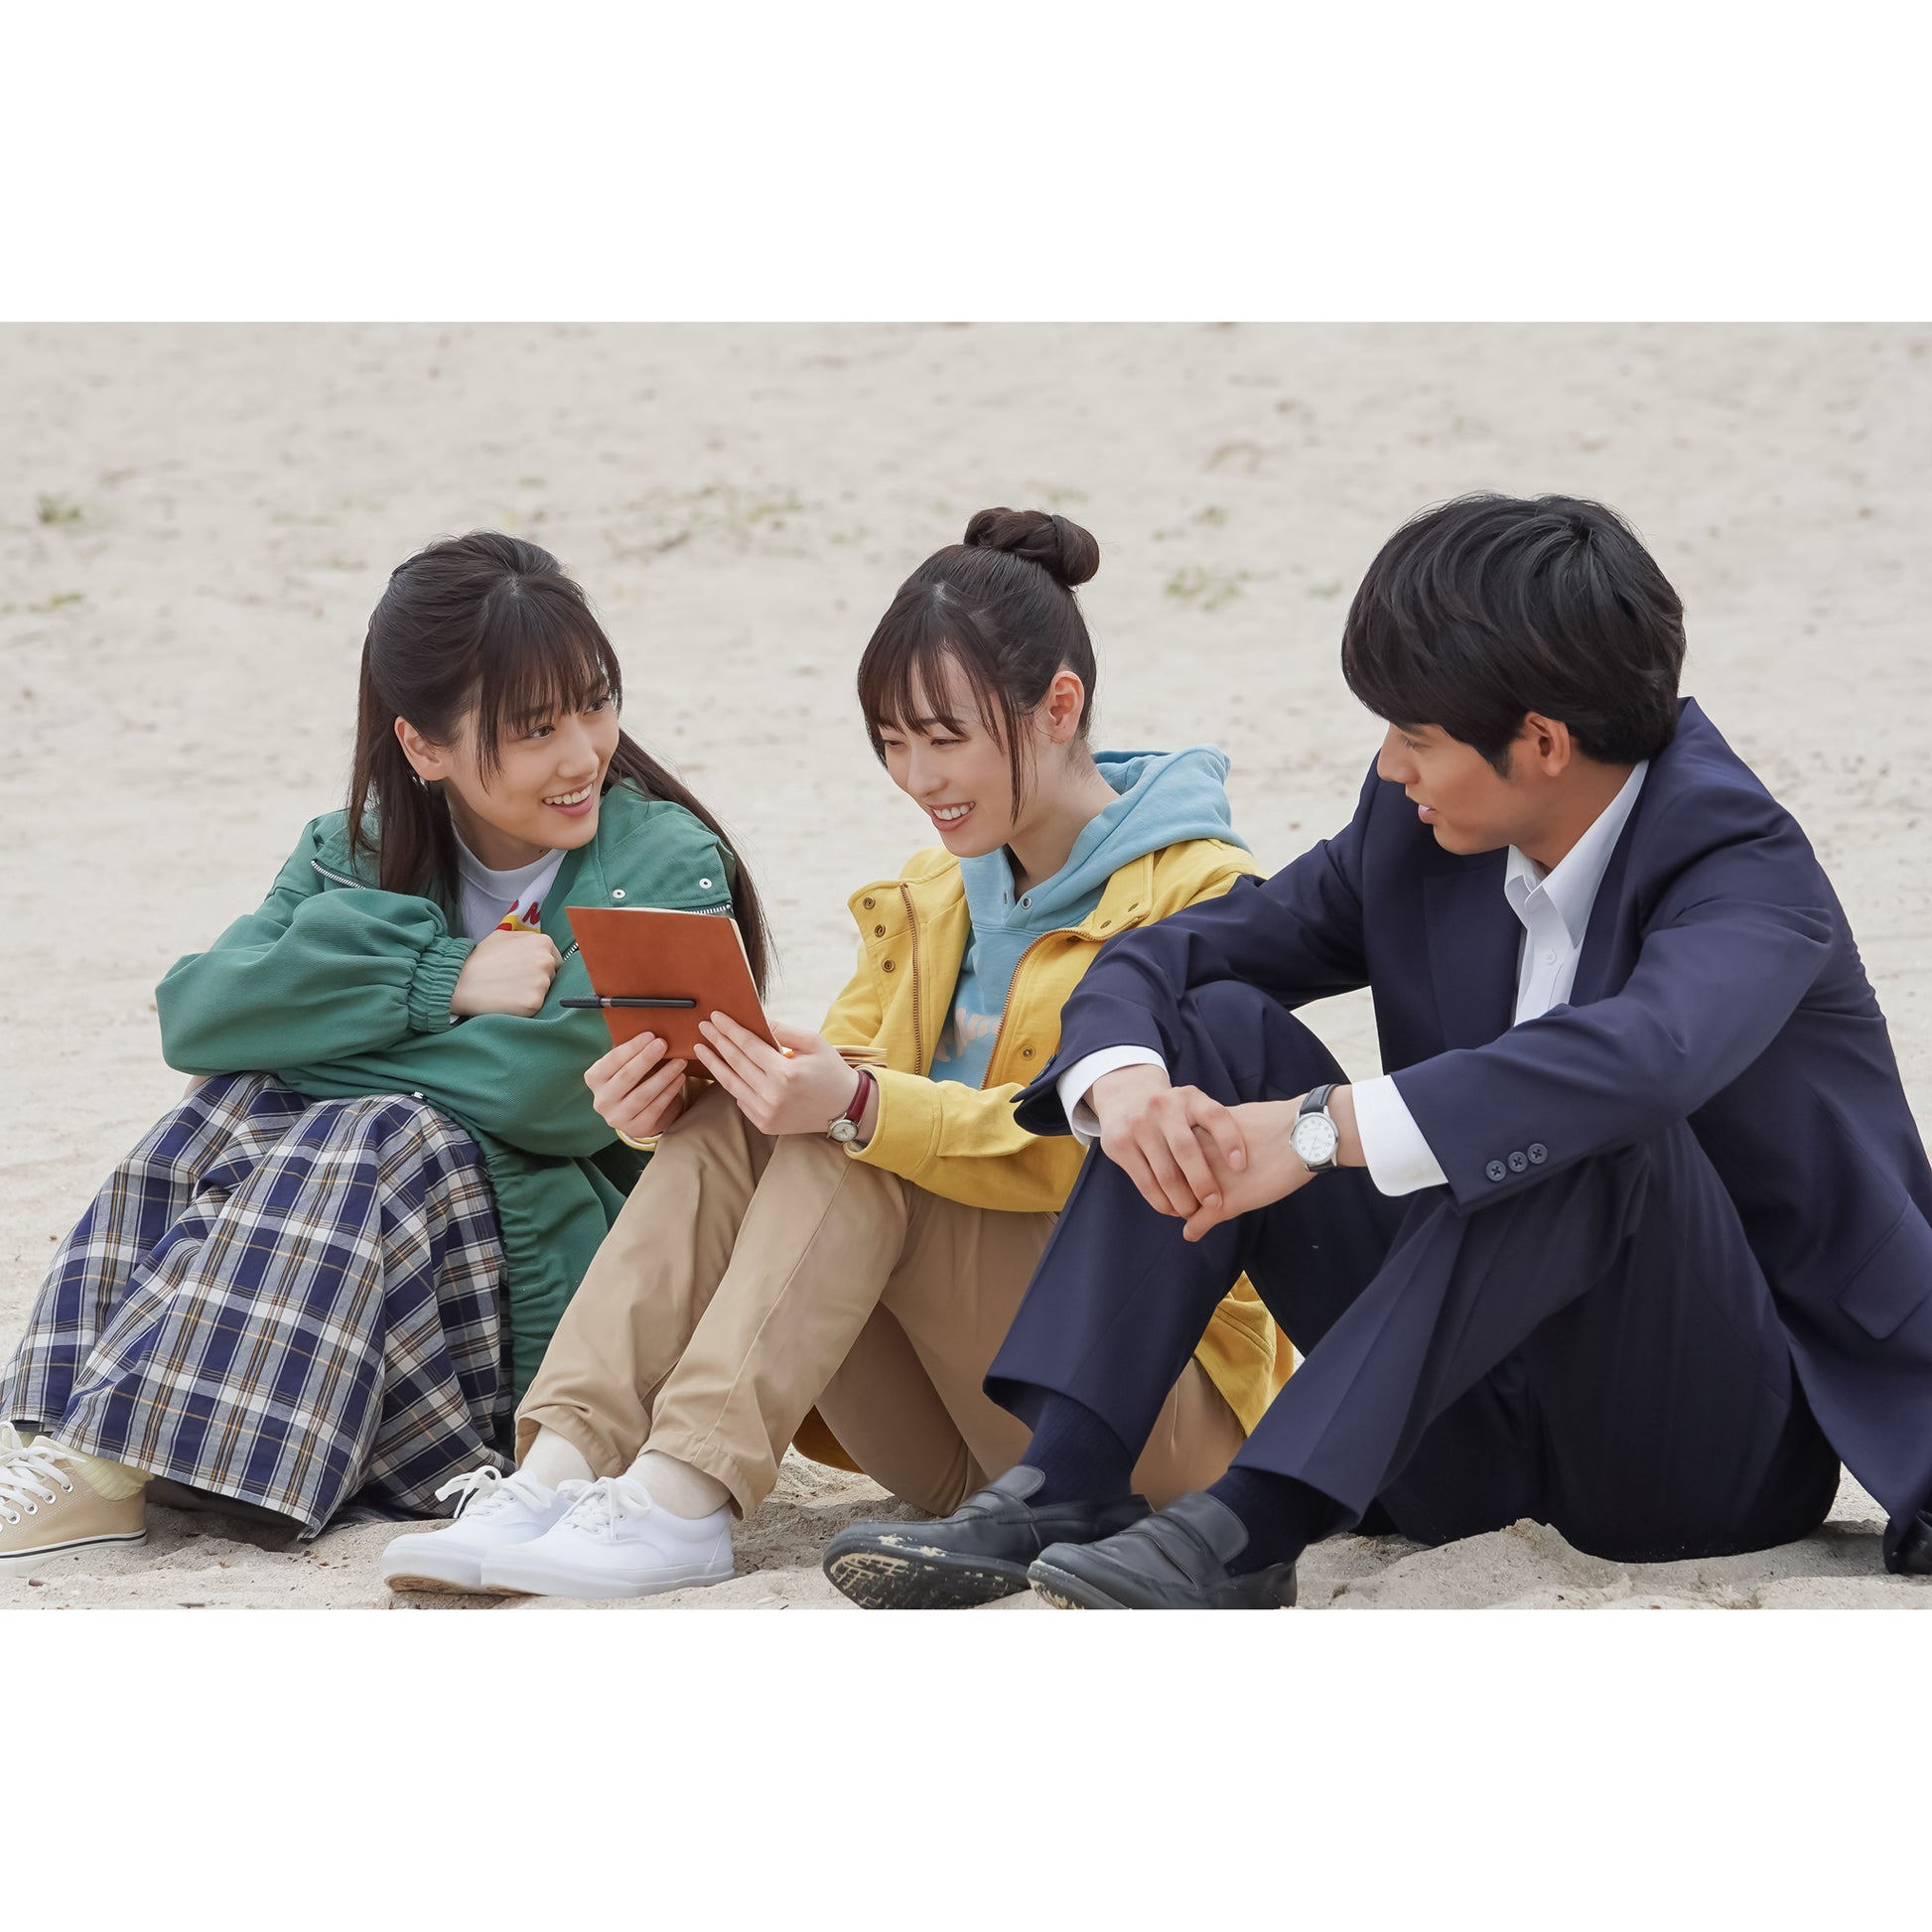 連続テレビ小説 舞いあがれ! 完全版 DVD BOX 1 2 3 - 邦画・日本映画